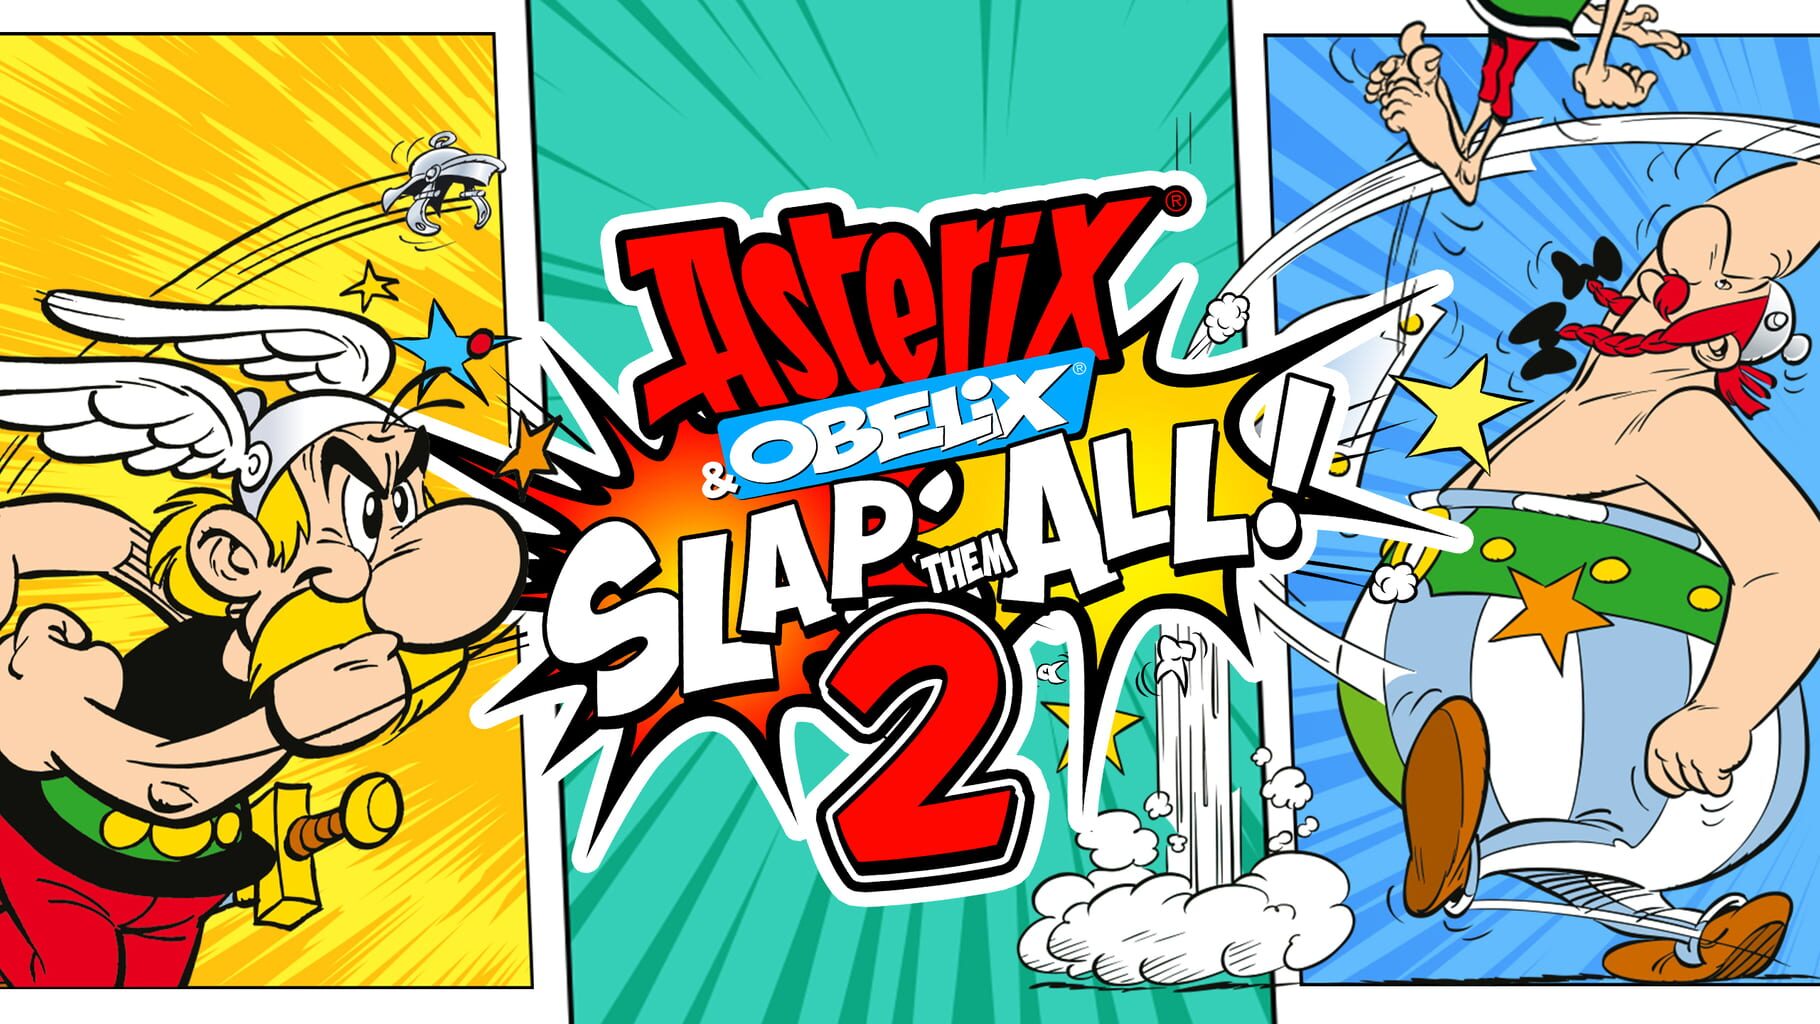 Arte - Asterix & Obelix: Slap Them All! 2